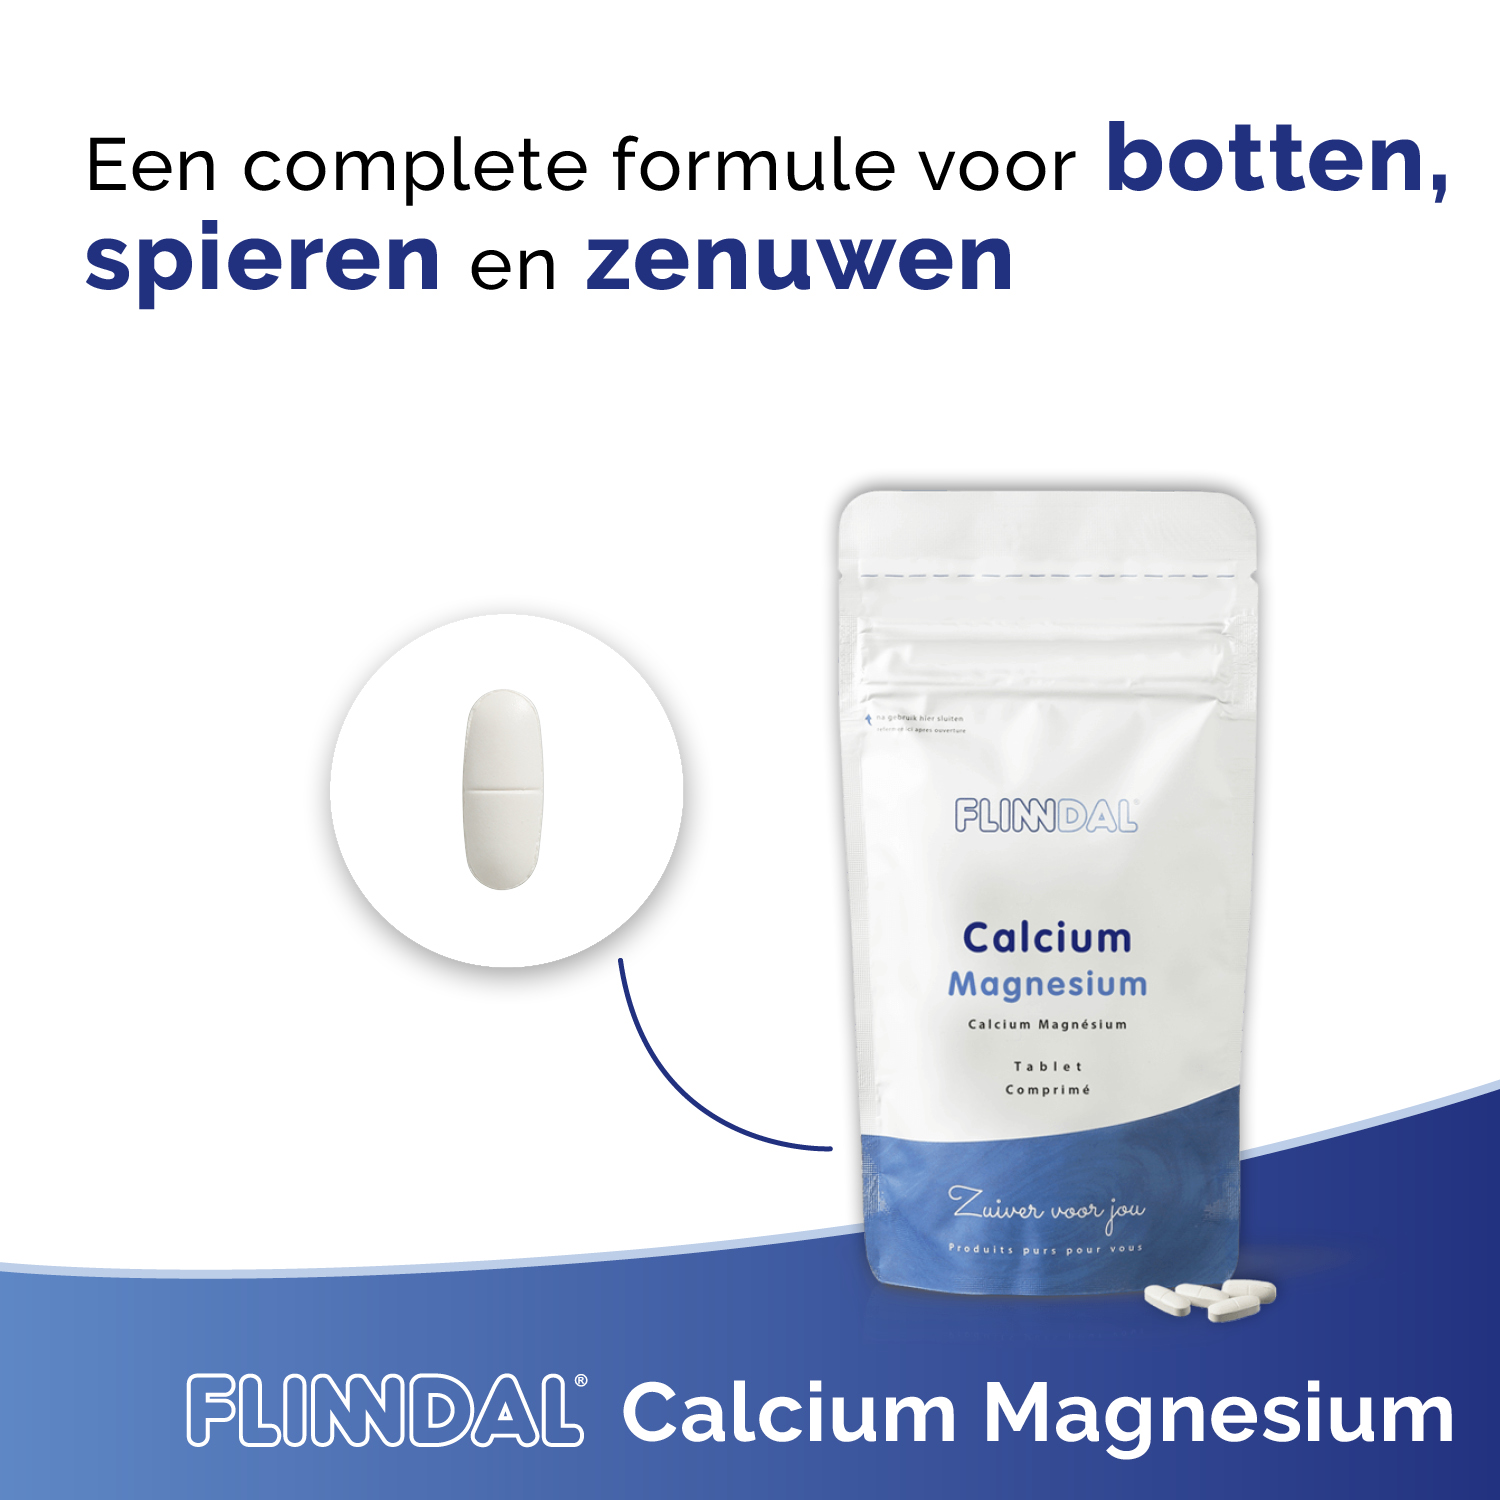 Calcium Magnesium nut